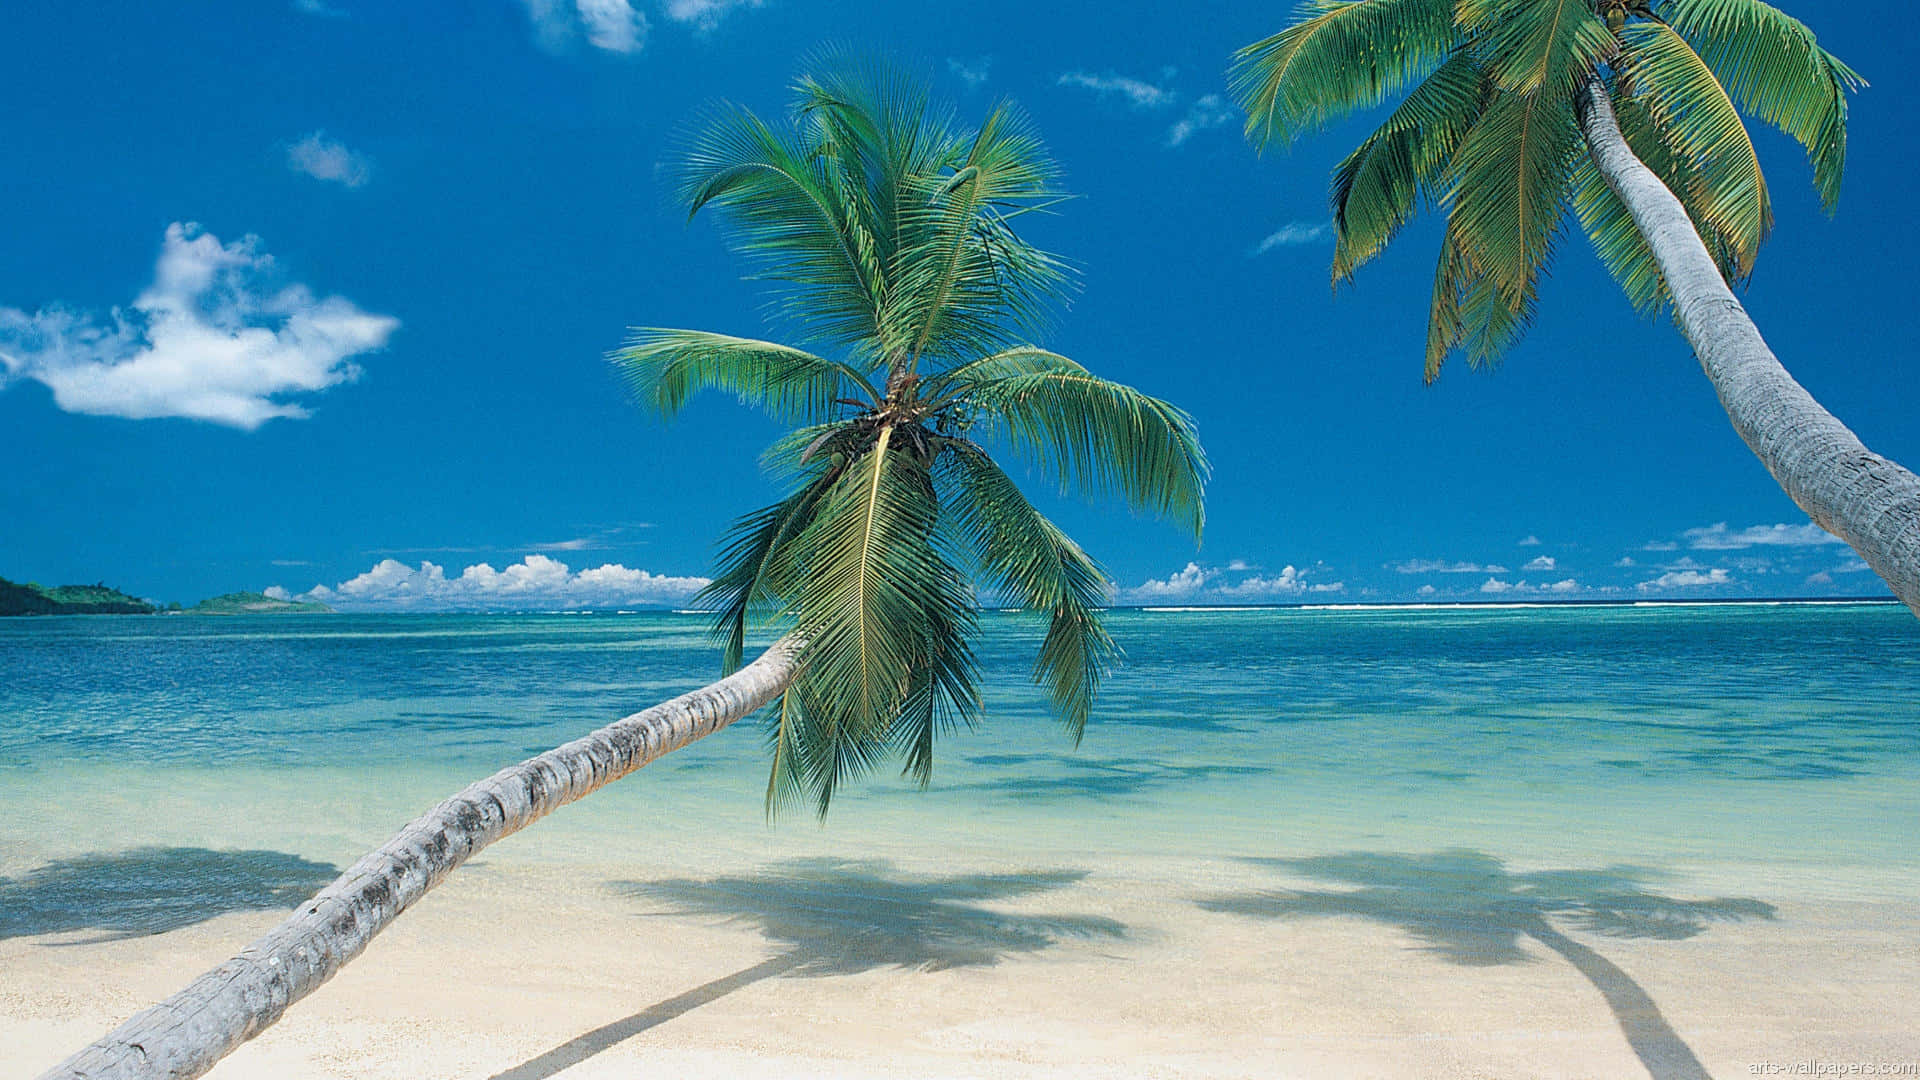 Gönnensie Sich Eine Auszeit Von Der Realität Und Entfliehen Sie An Diesen Friedlichen Tropischen Strand. Wallpaper